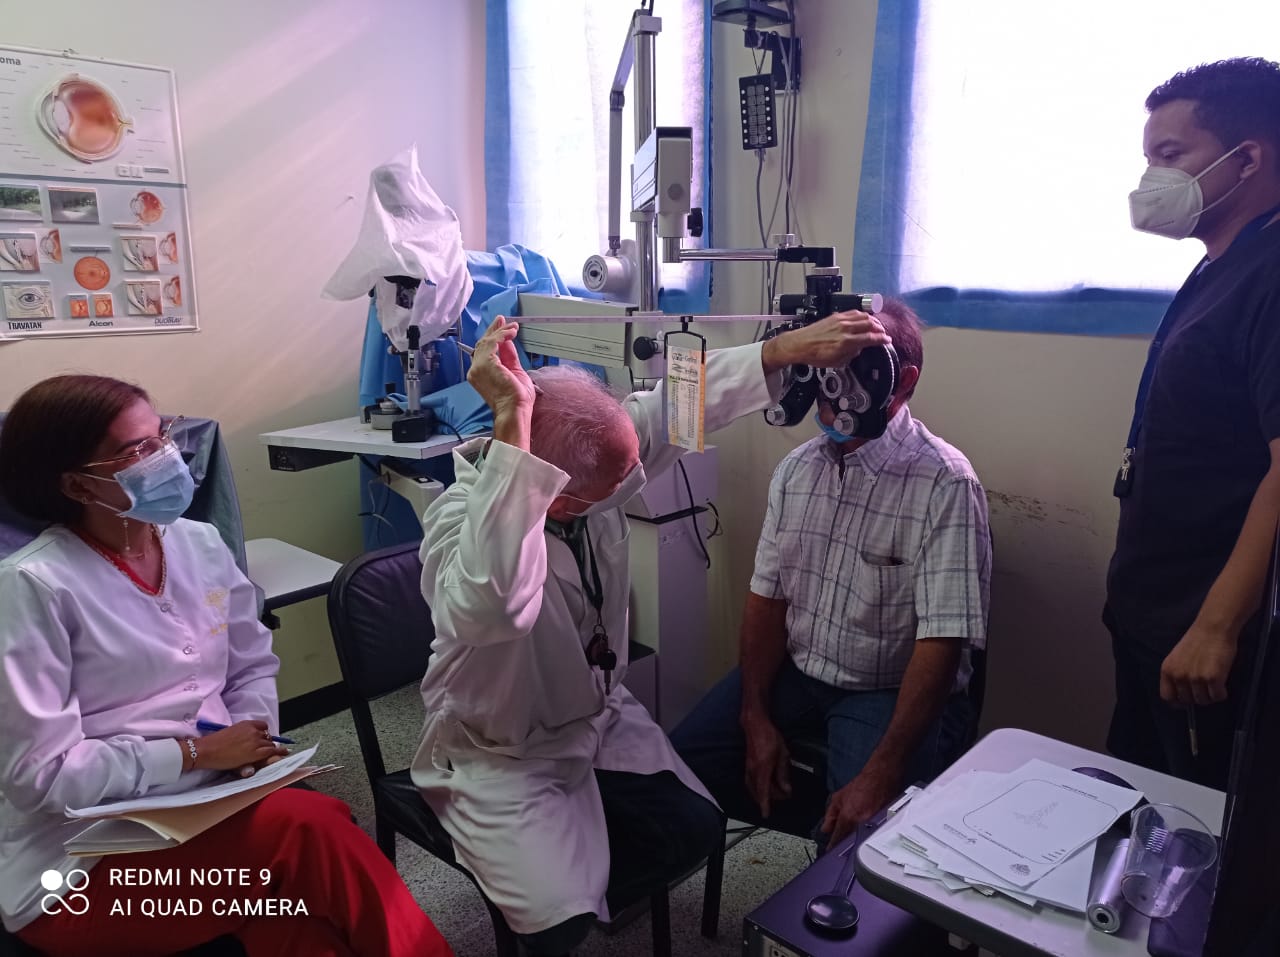  Jornada oftalmológica beneficia a más de 70 pacientes de Dabajuro